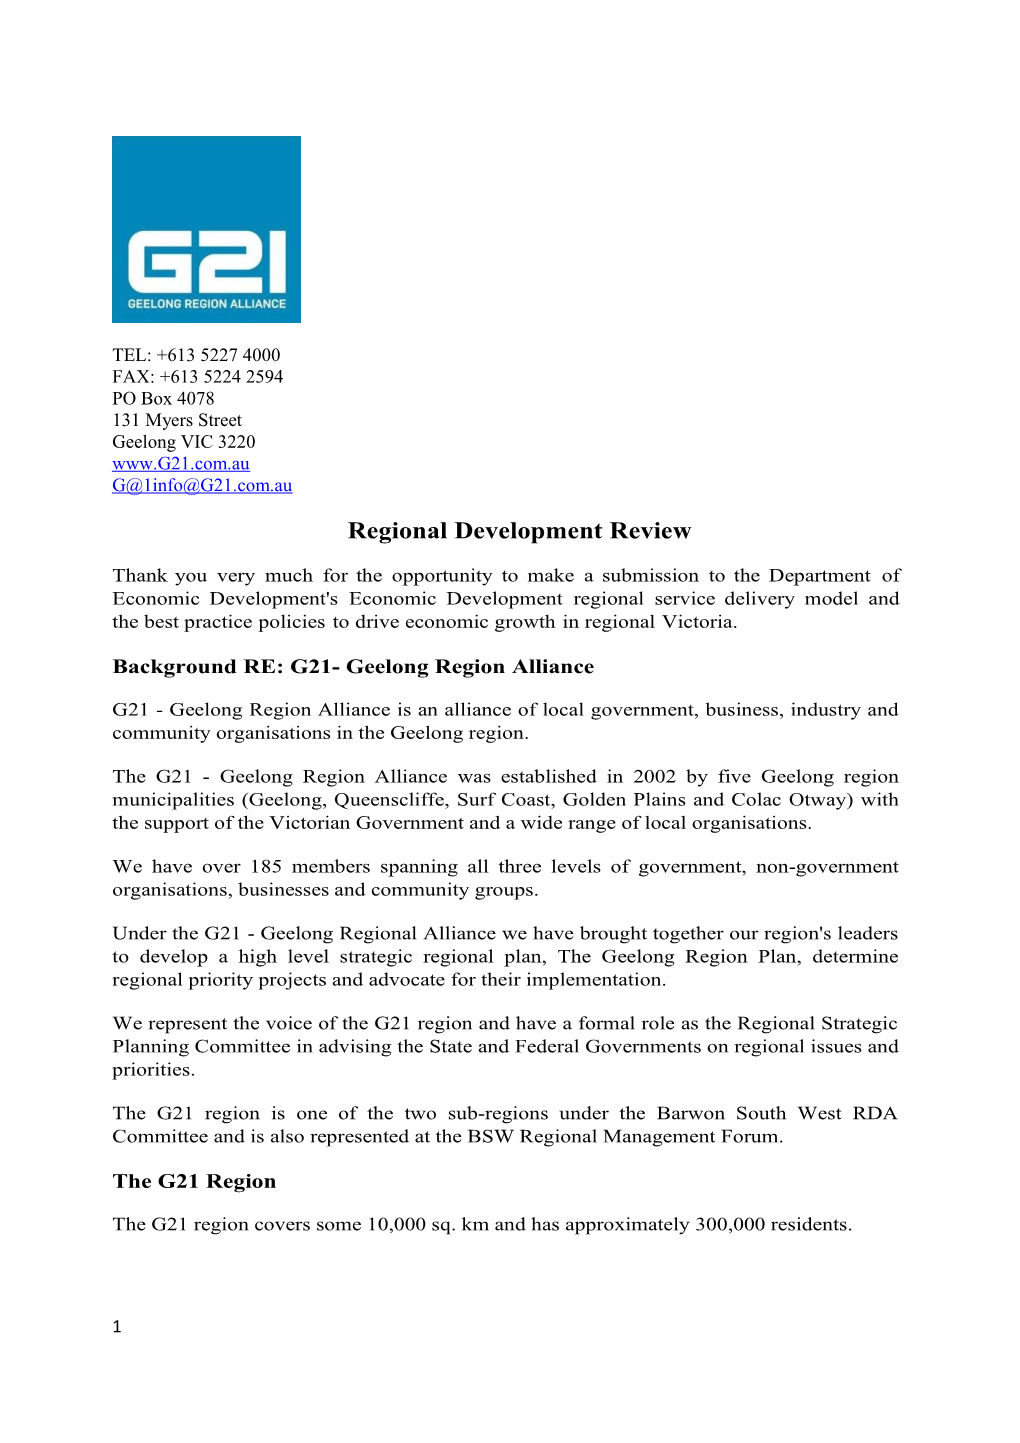 Background RE: G21- Geelong Region Alliance